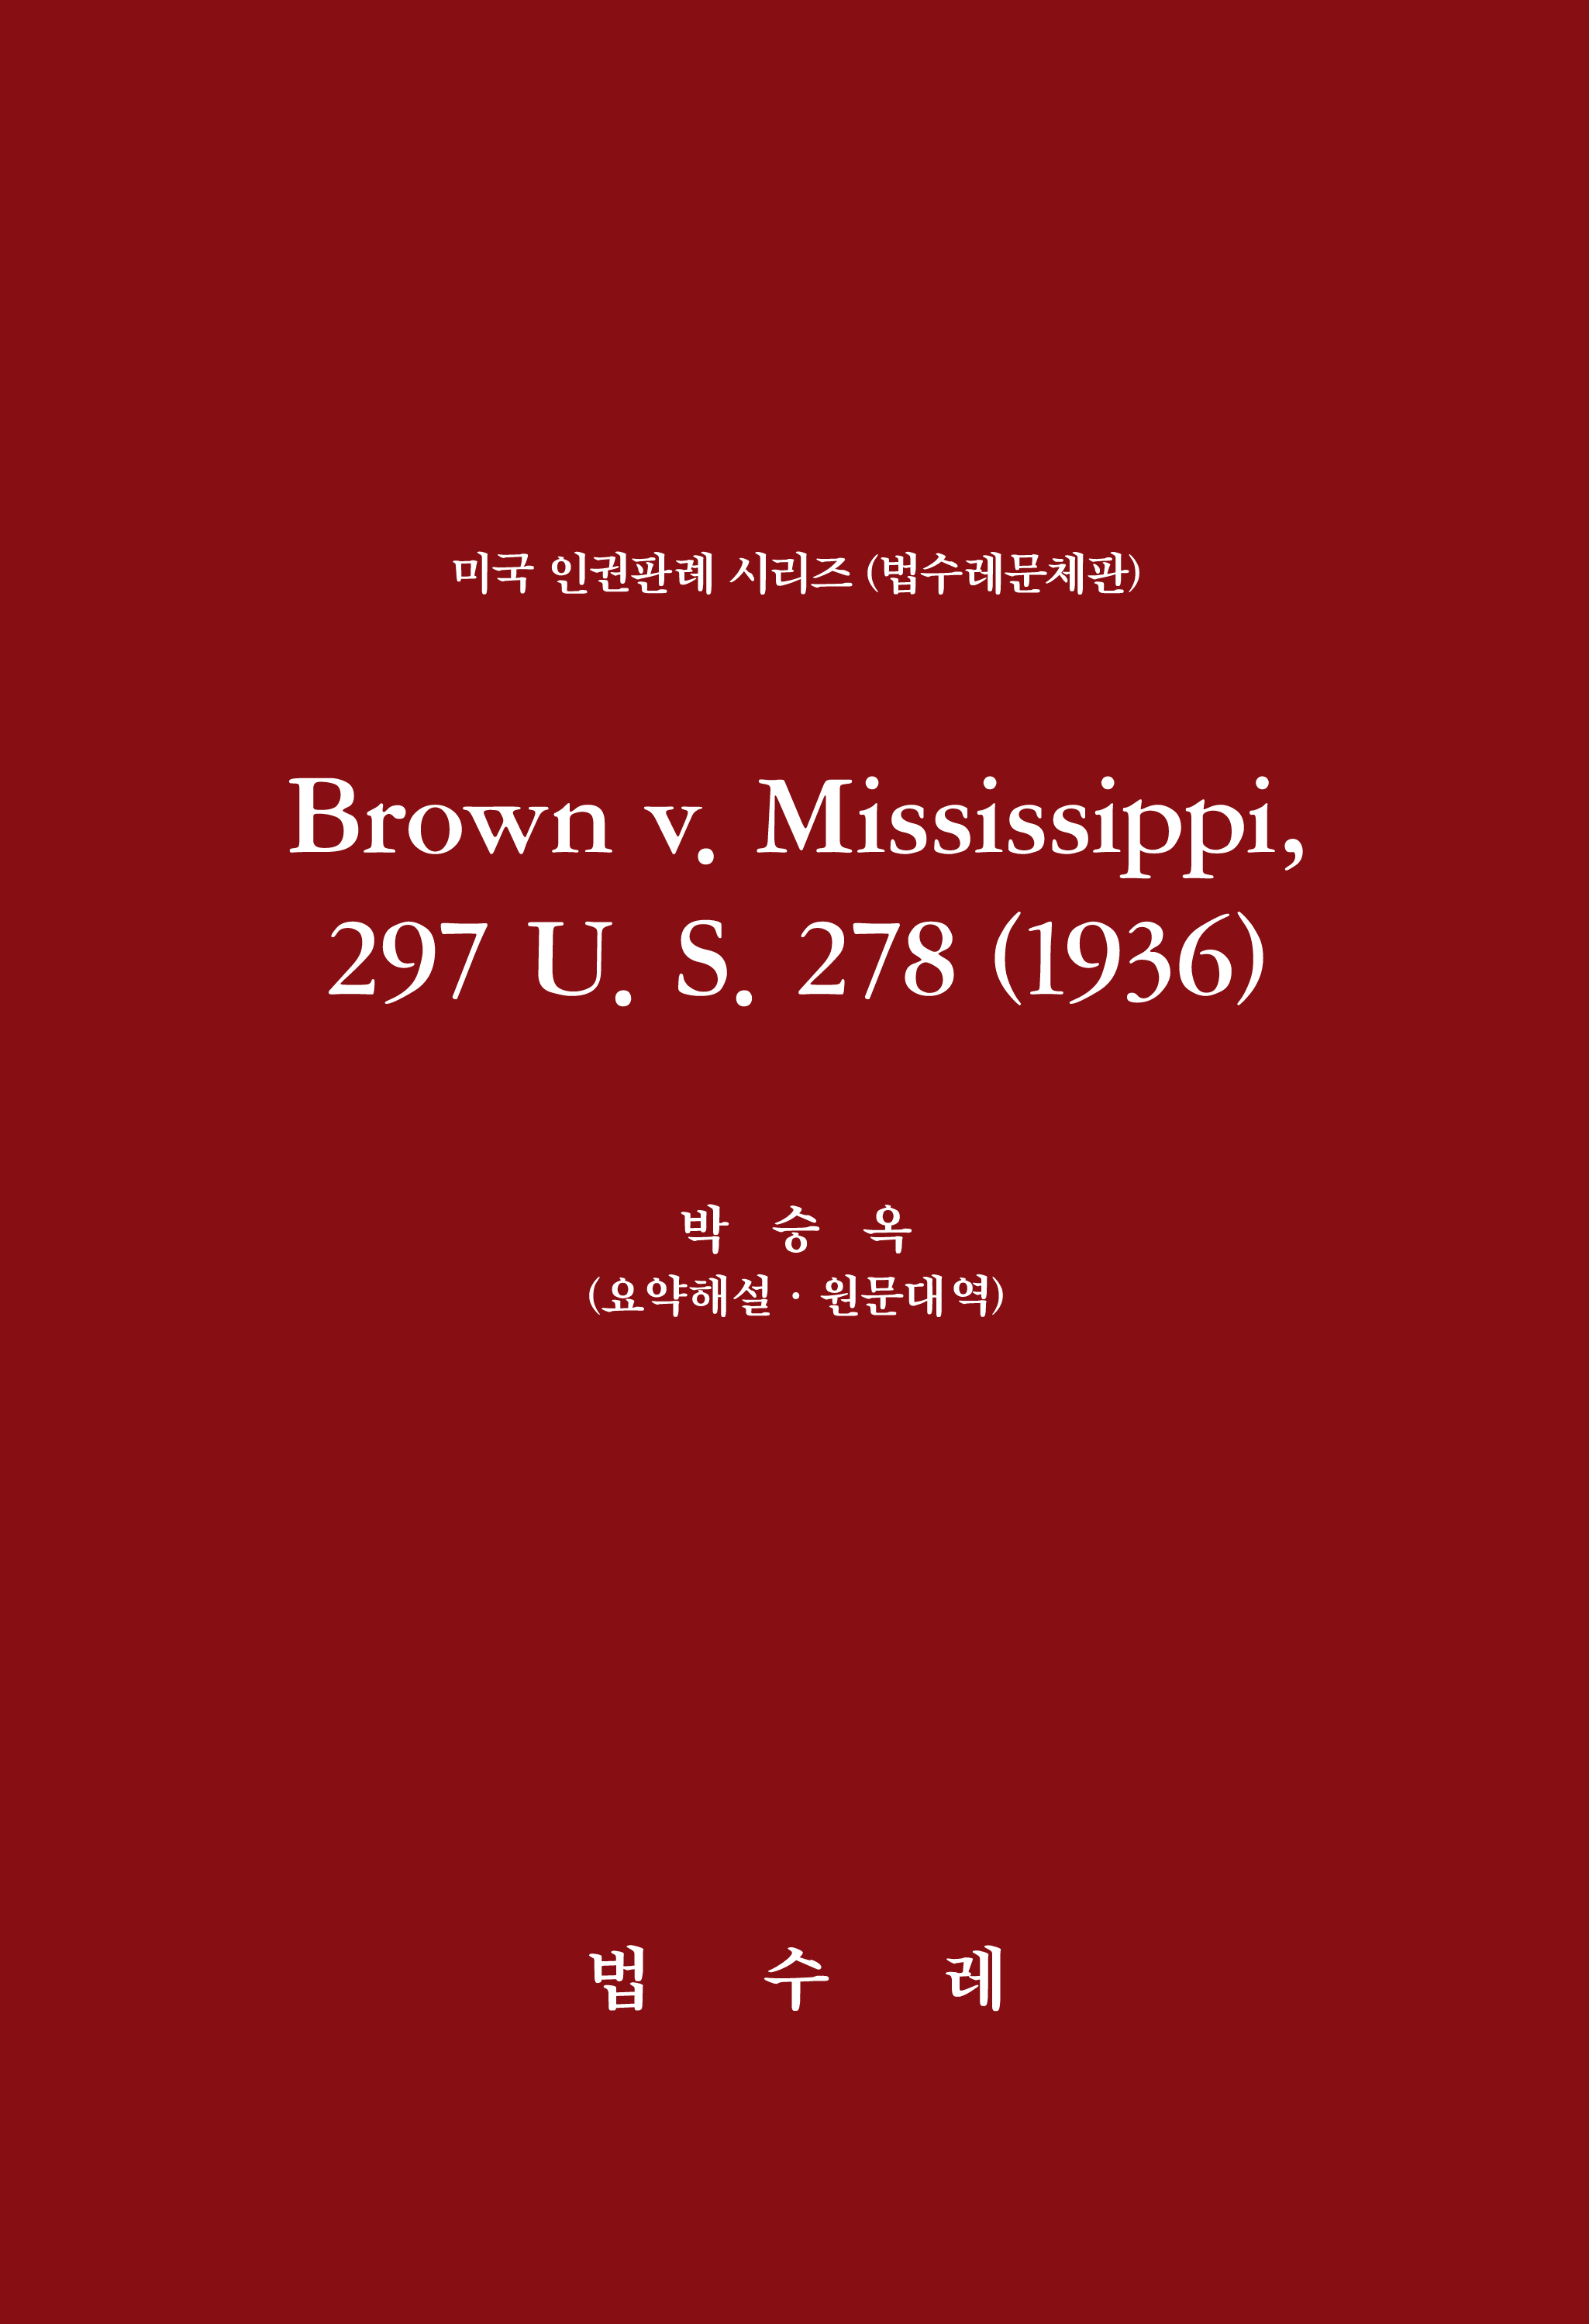 Brown v. Mississippi, 297 U. S. 278 (1936)